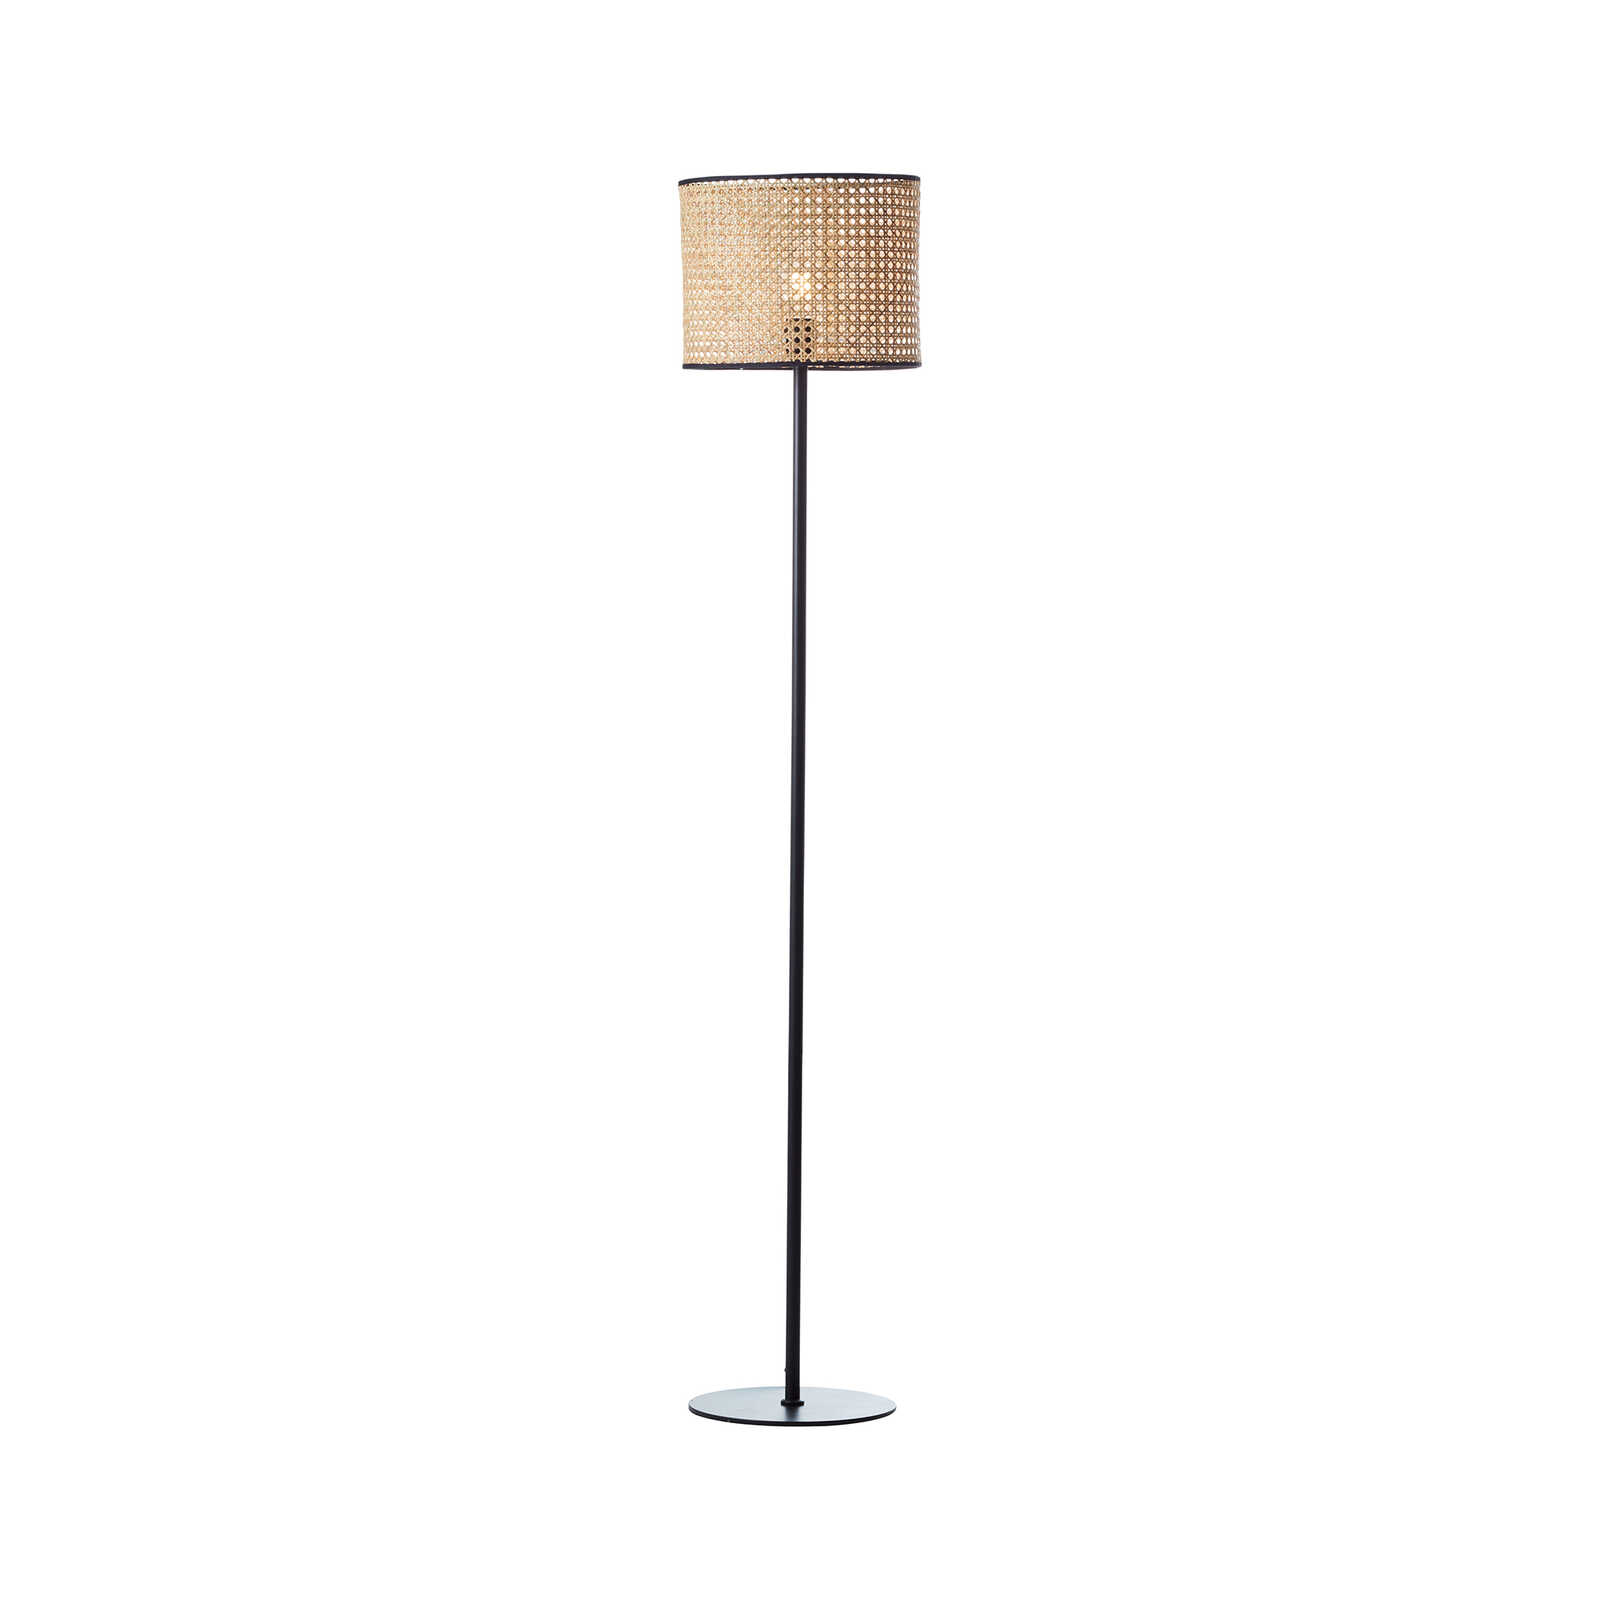 Rattan floor lamp - Toni 5 - Beige
